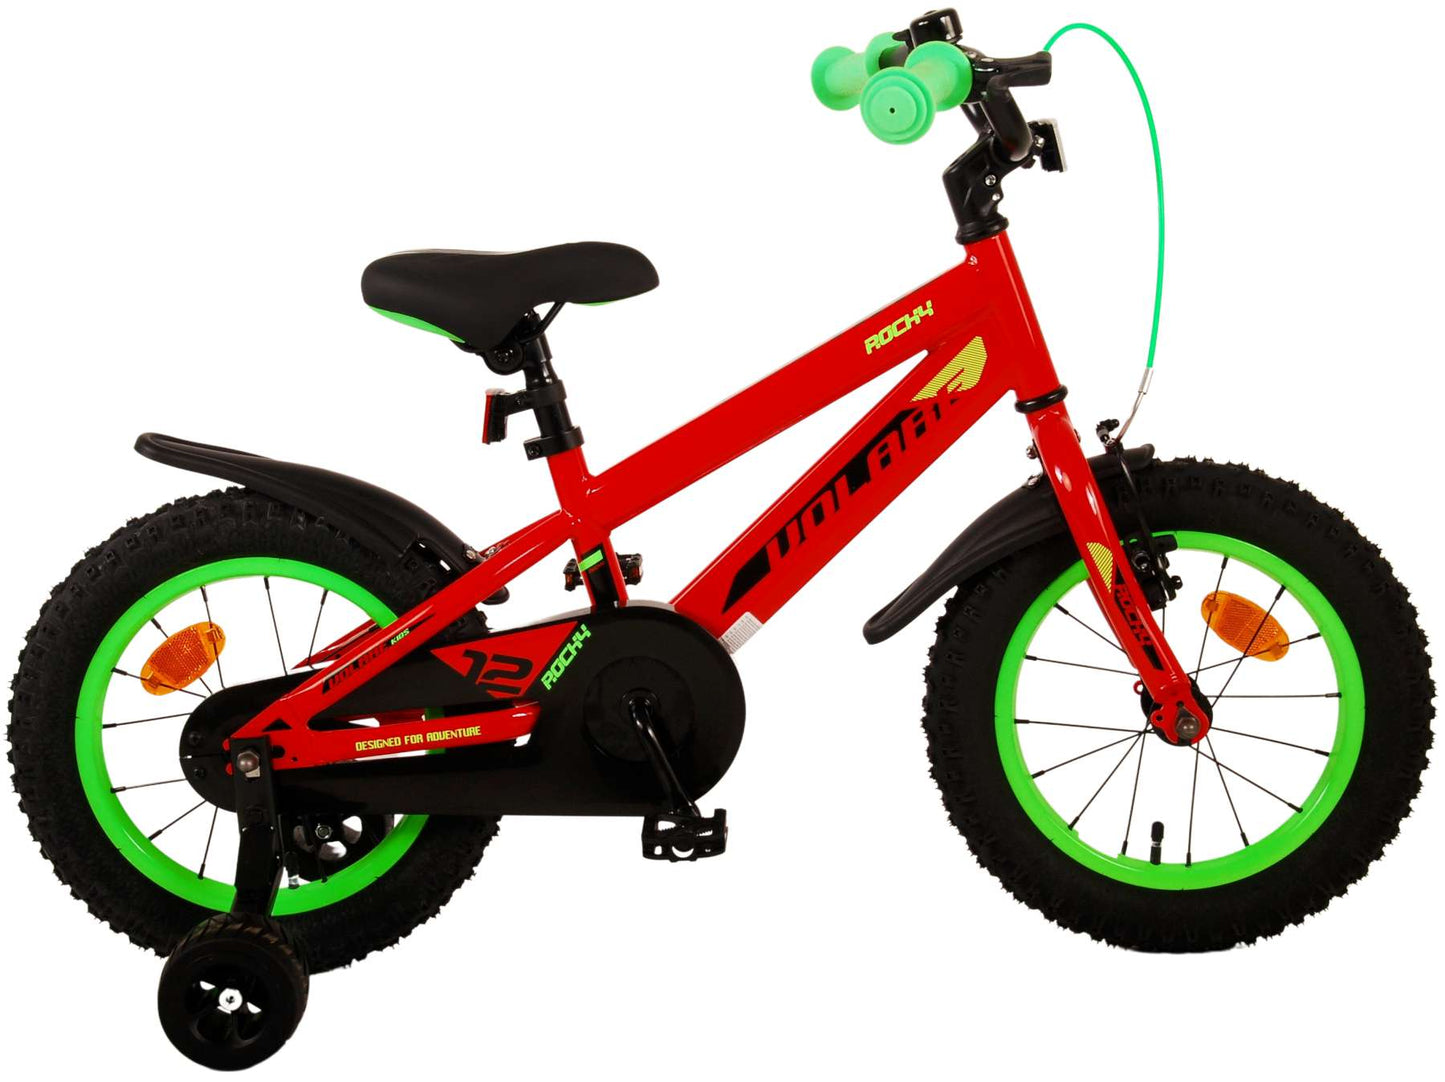 Bicicleta para niños Rocky de Vlare - Niños - 14 pulgadas - Rojo